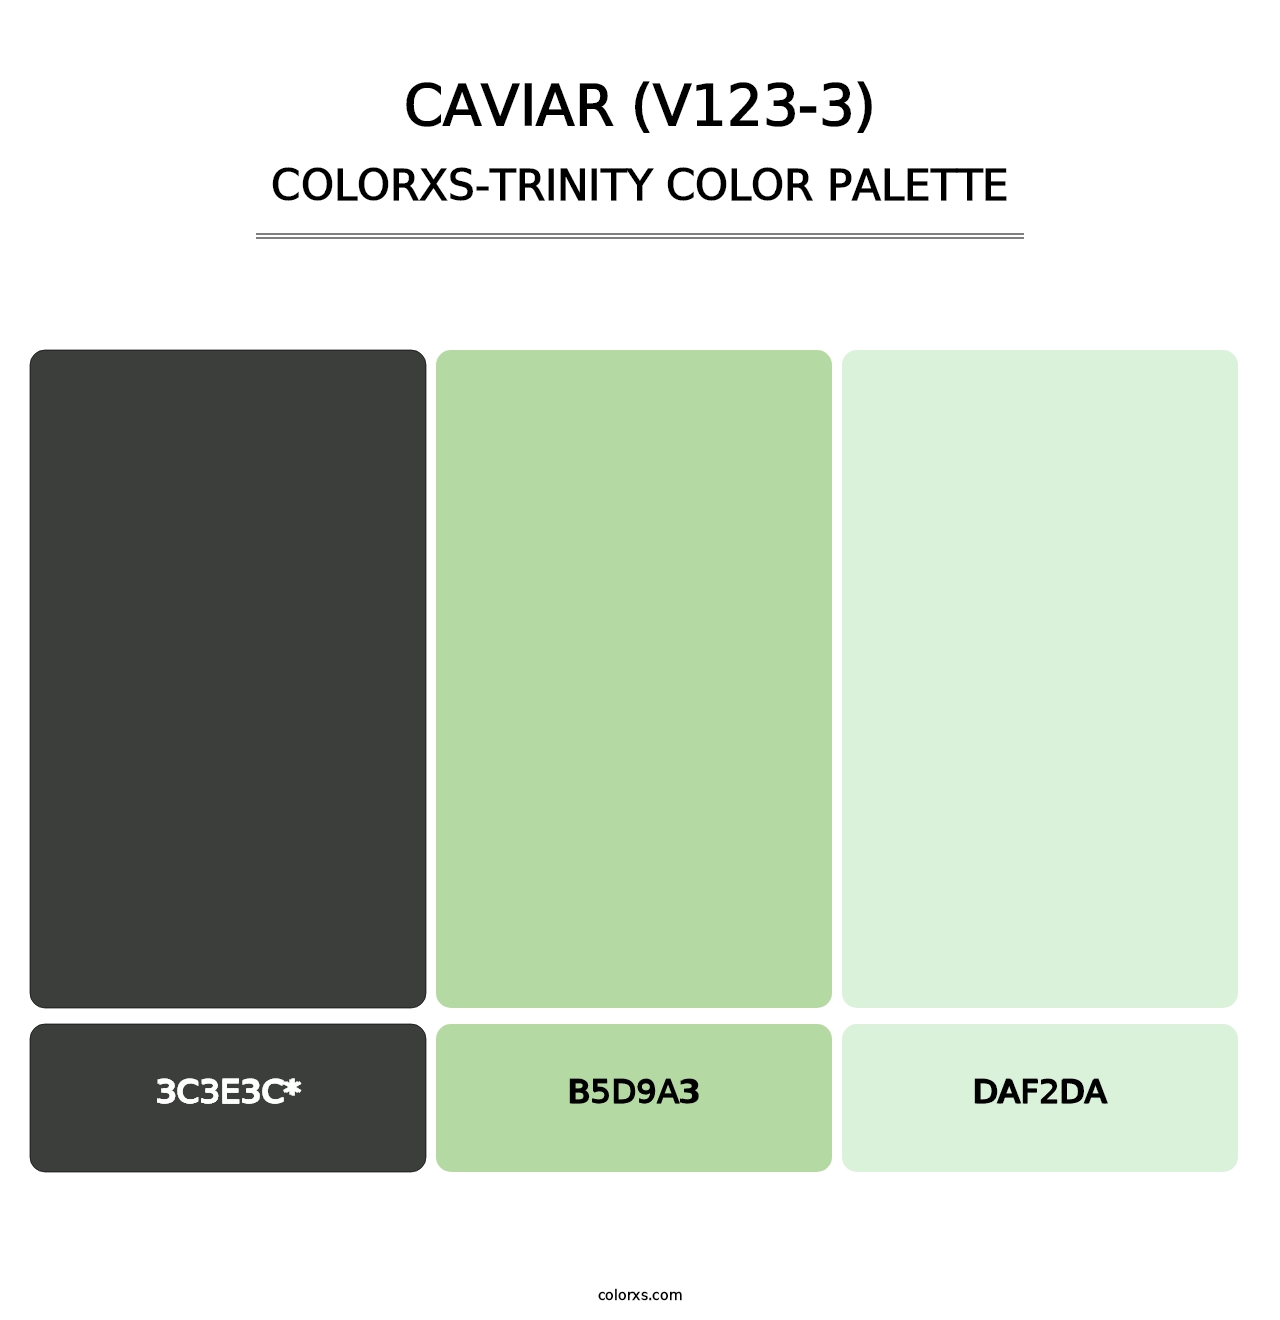 Caviar (V123-3) - Colorxs Trinity Palette